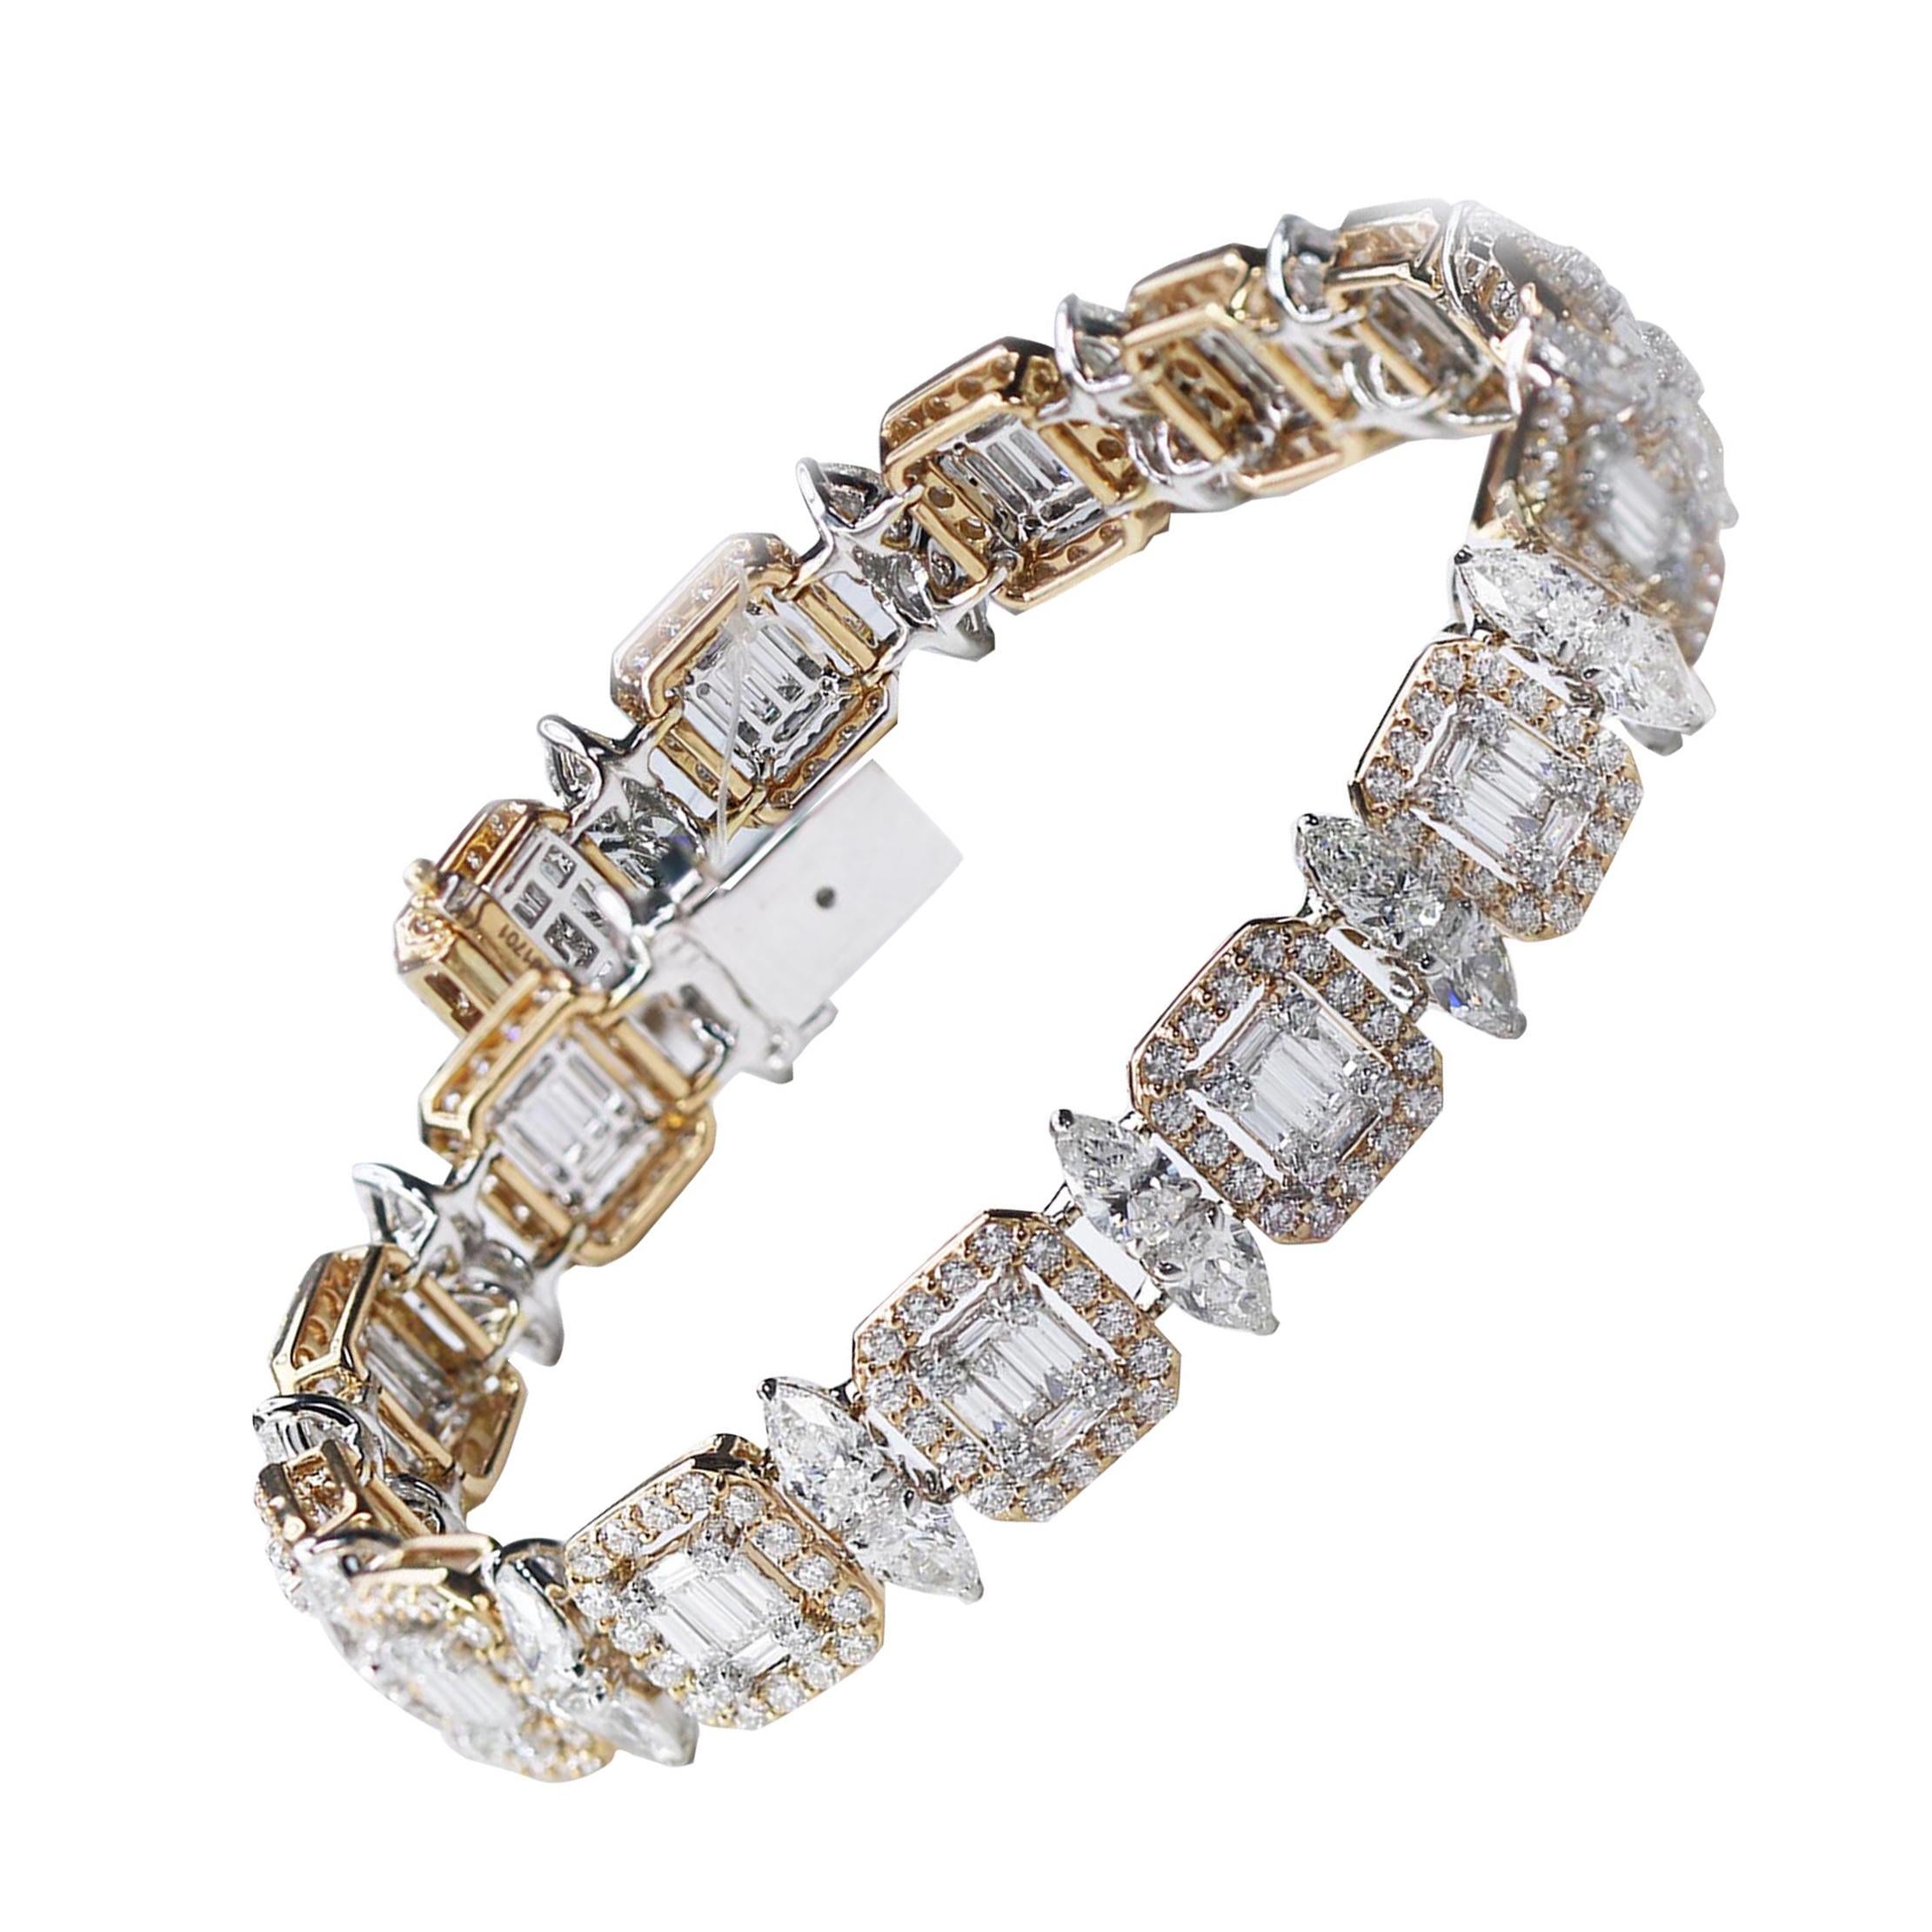 Studio Rêves 18K Rose and White Gold Mosaic Baguette Diamond Tennis Bracelet